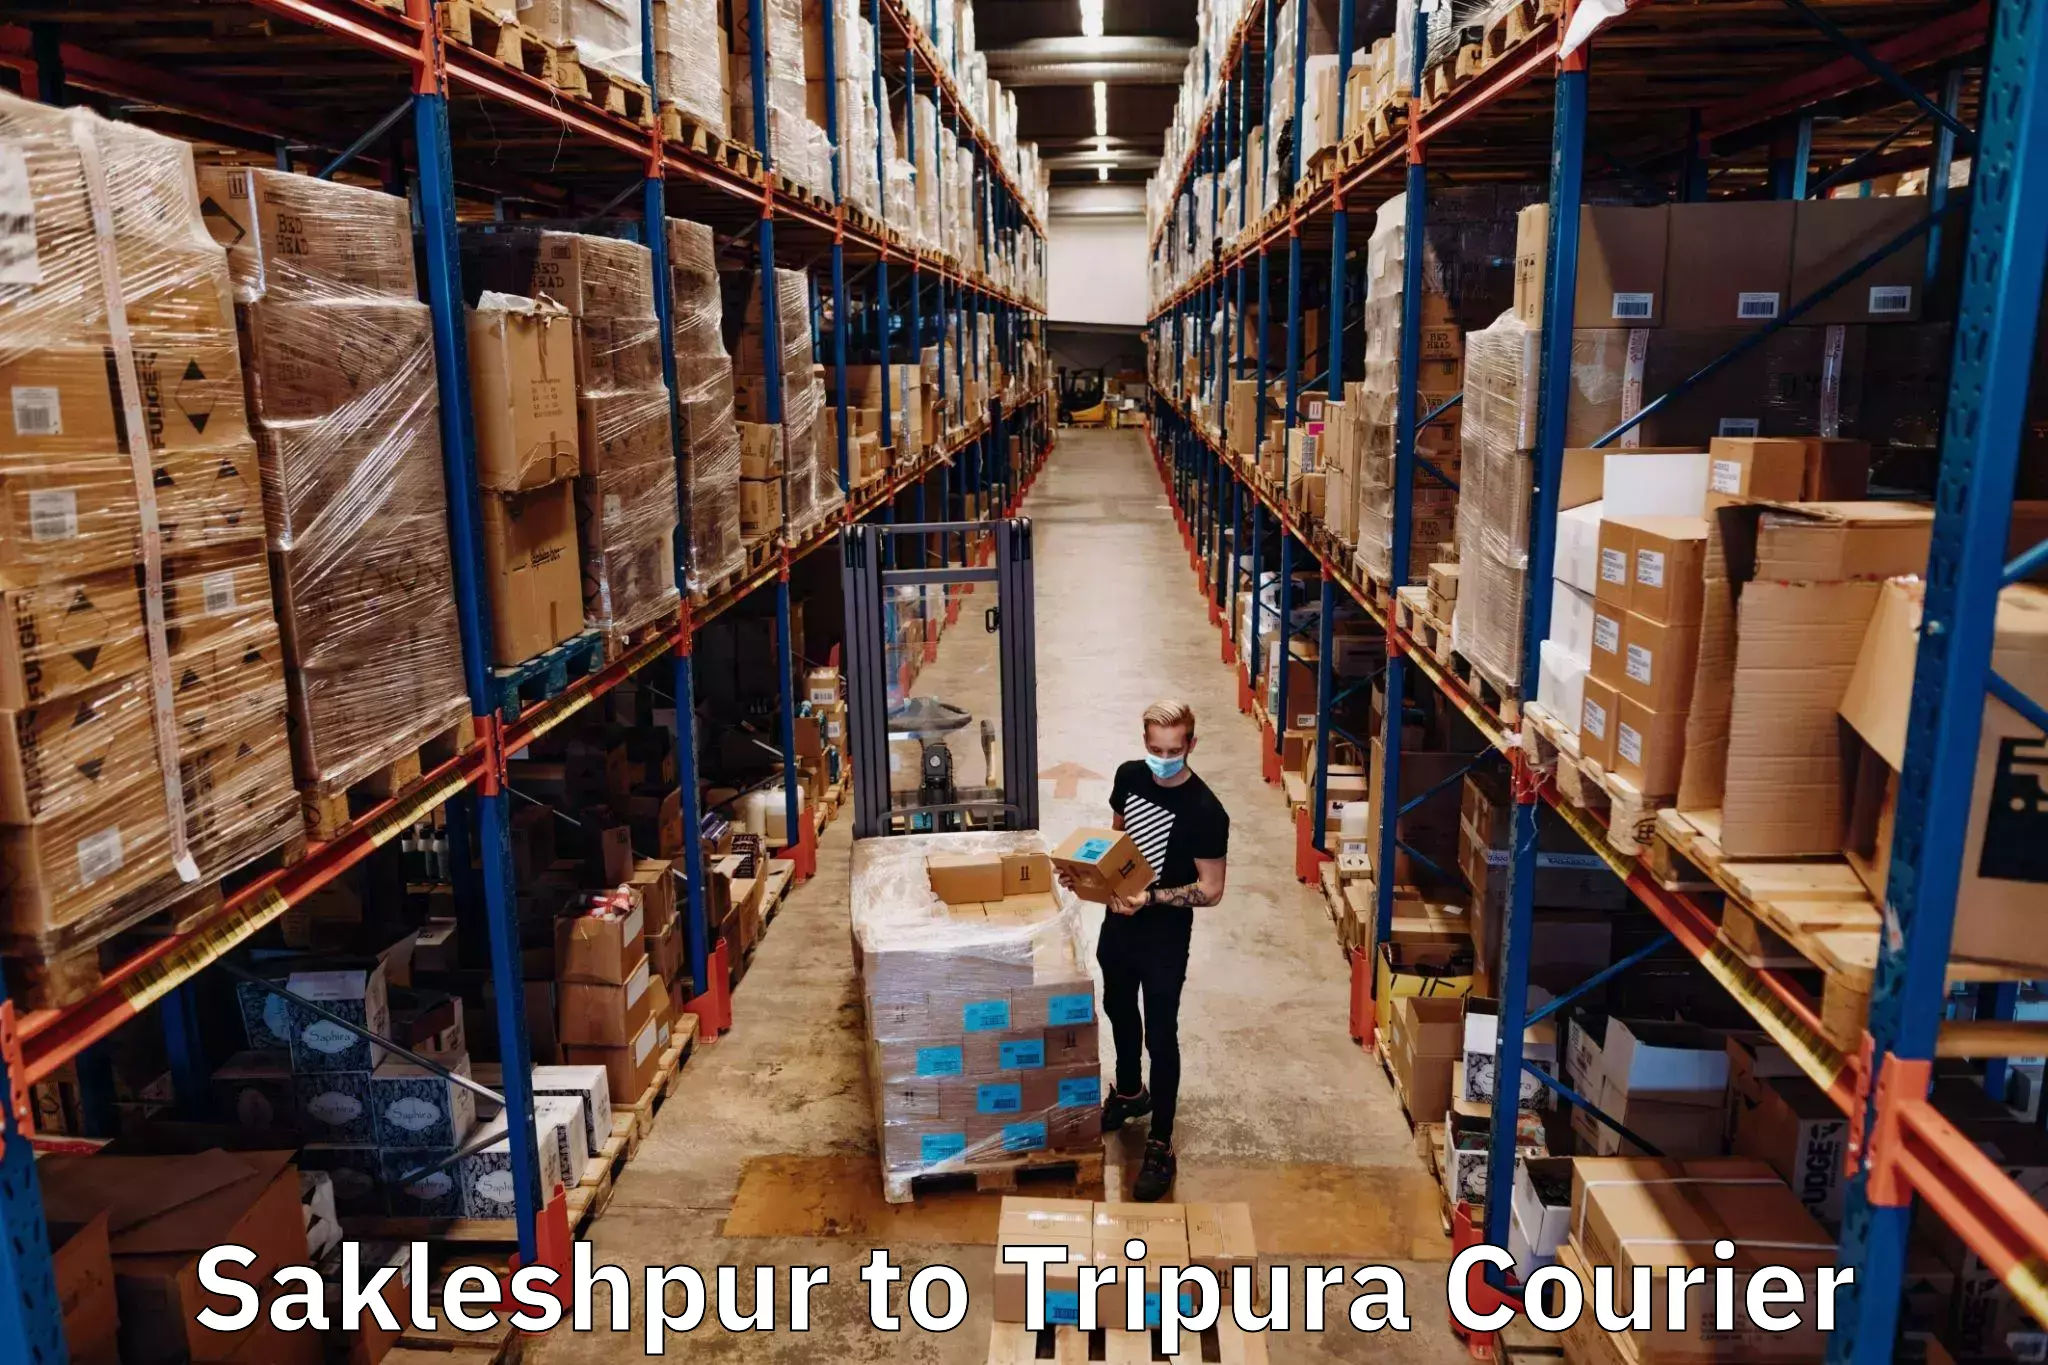 Customer-focused courier Sakleshpur to Udaipur Tripura